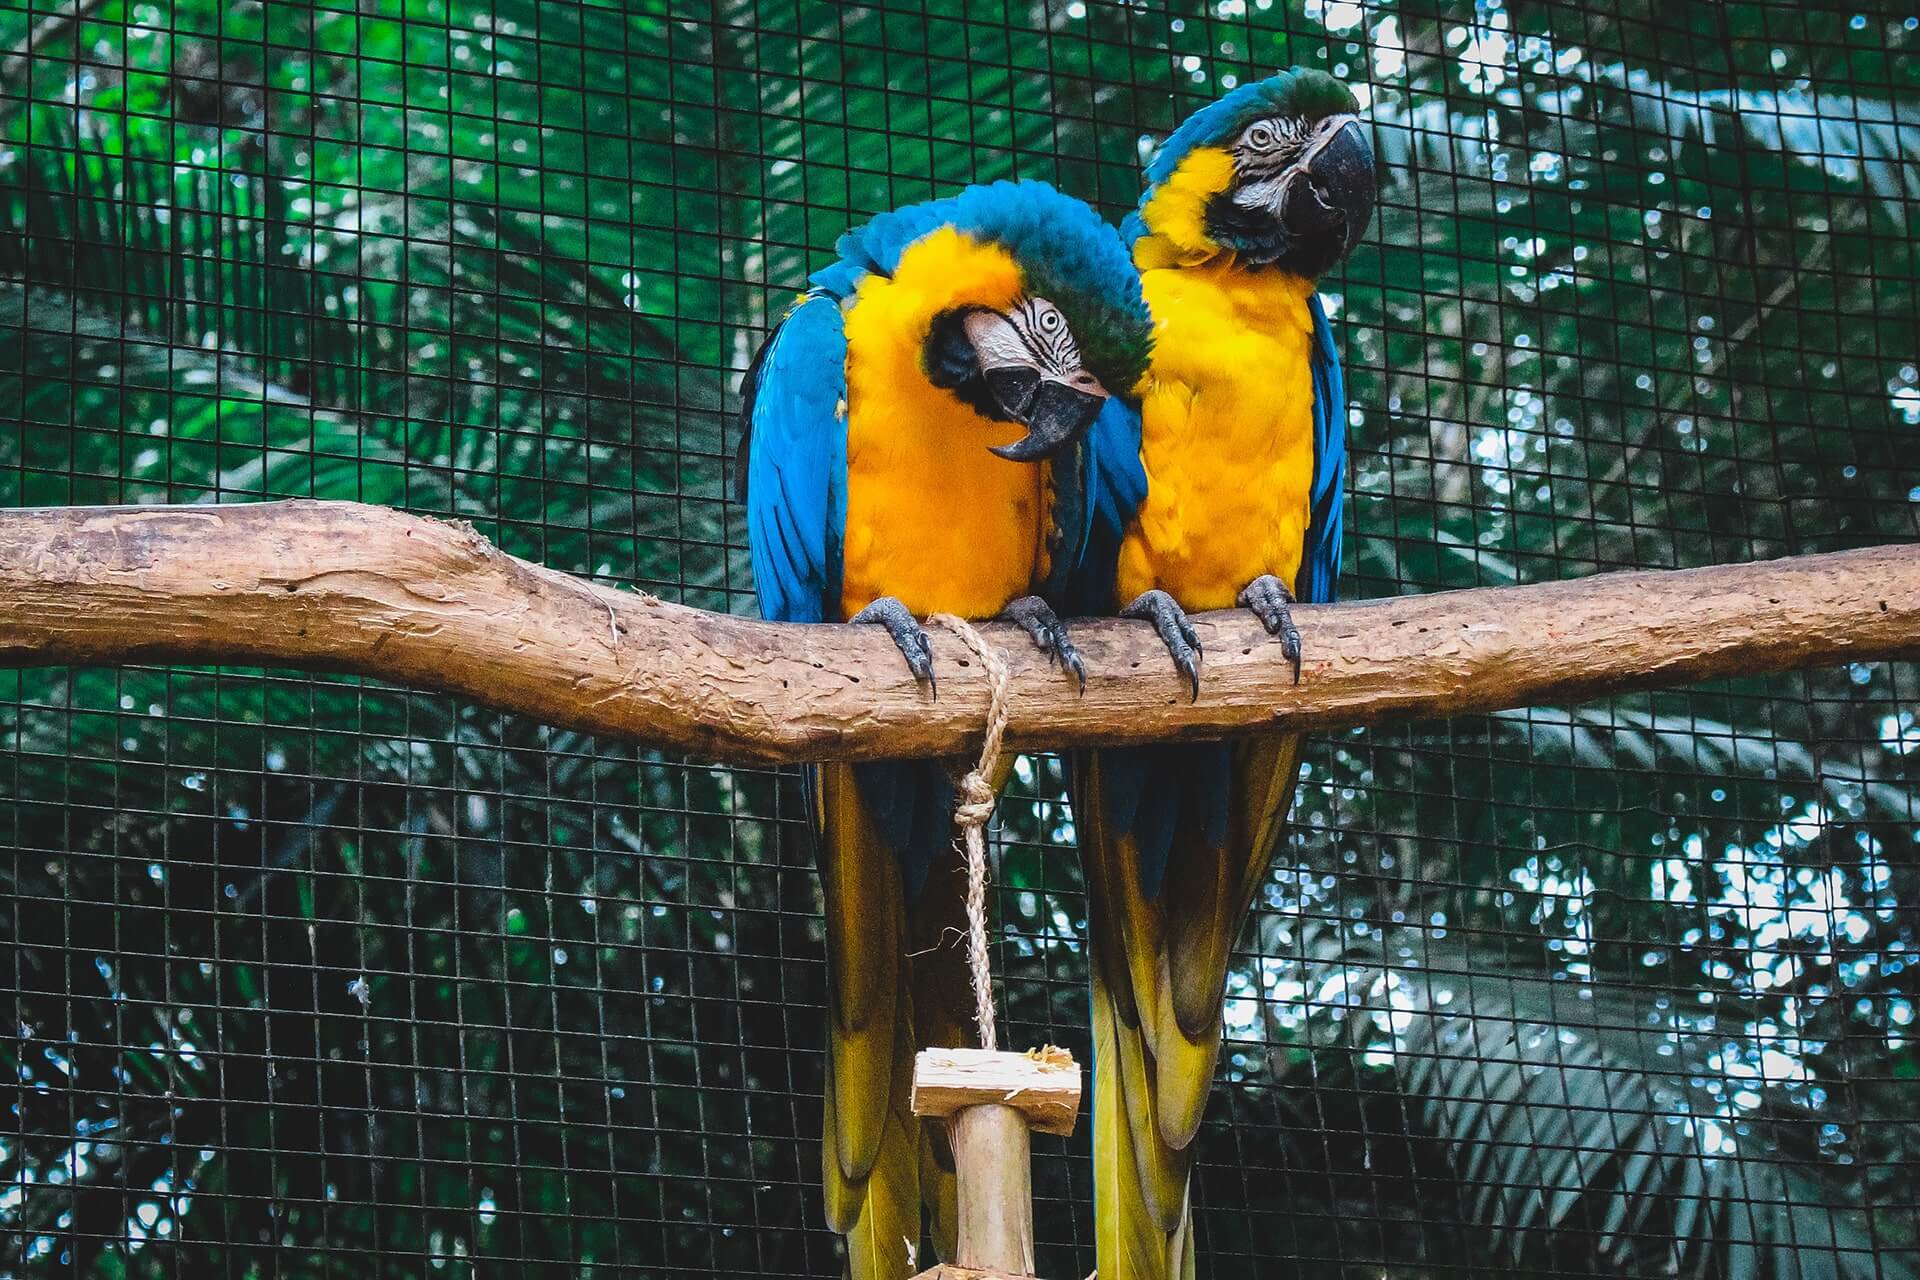 Our Parrots